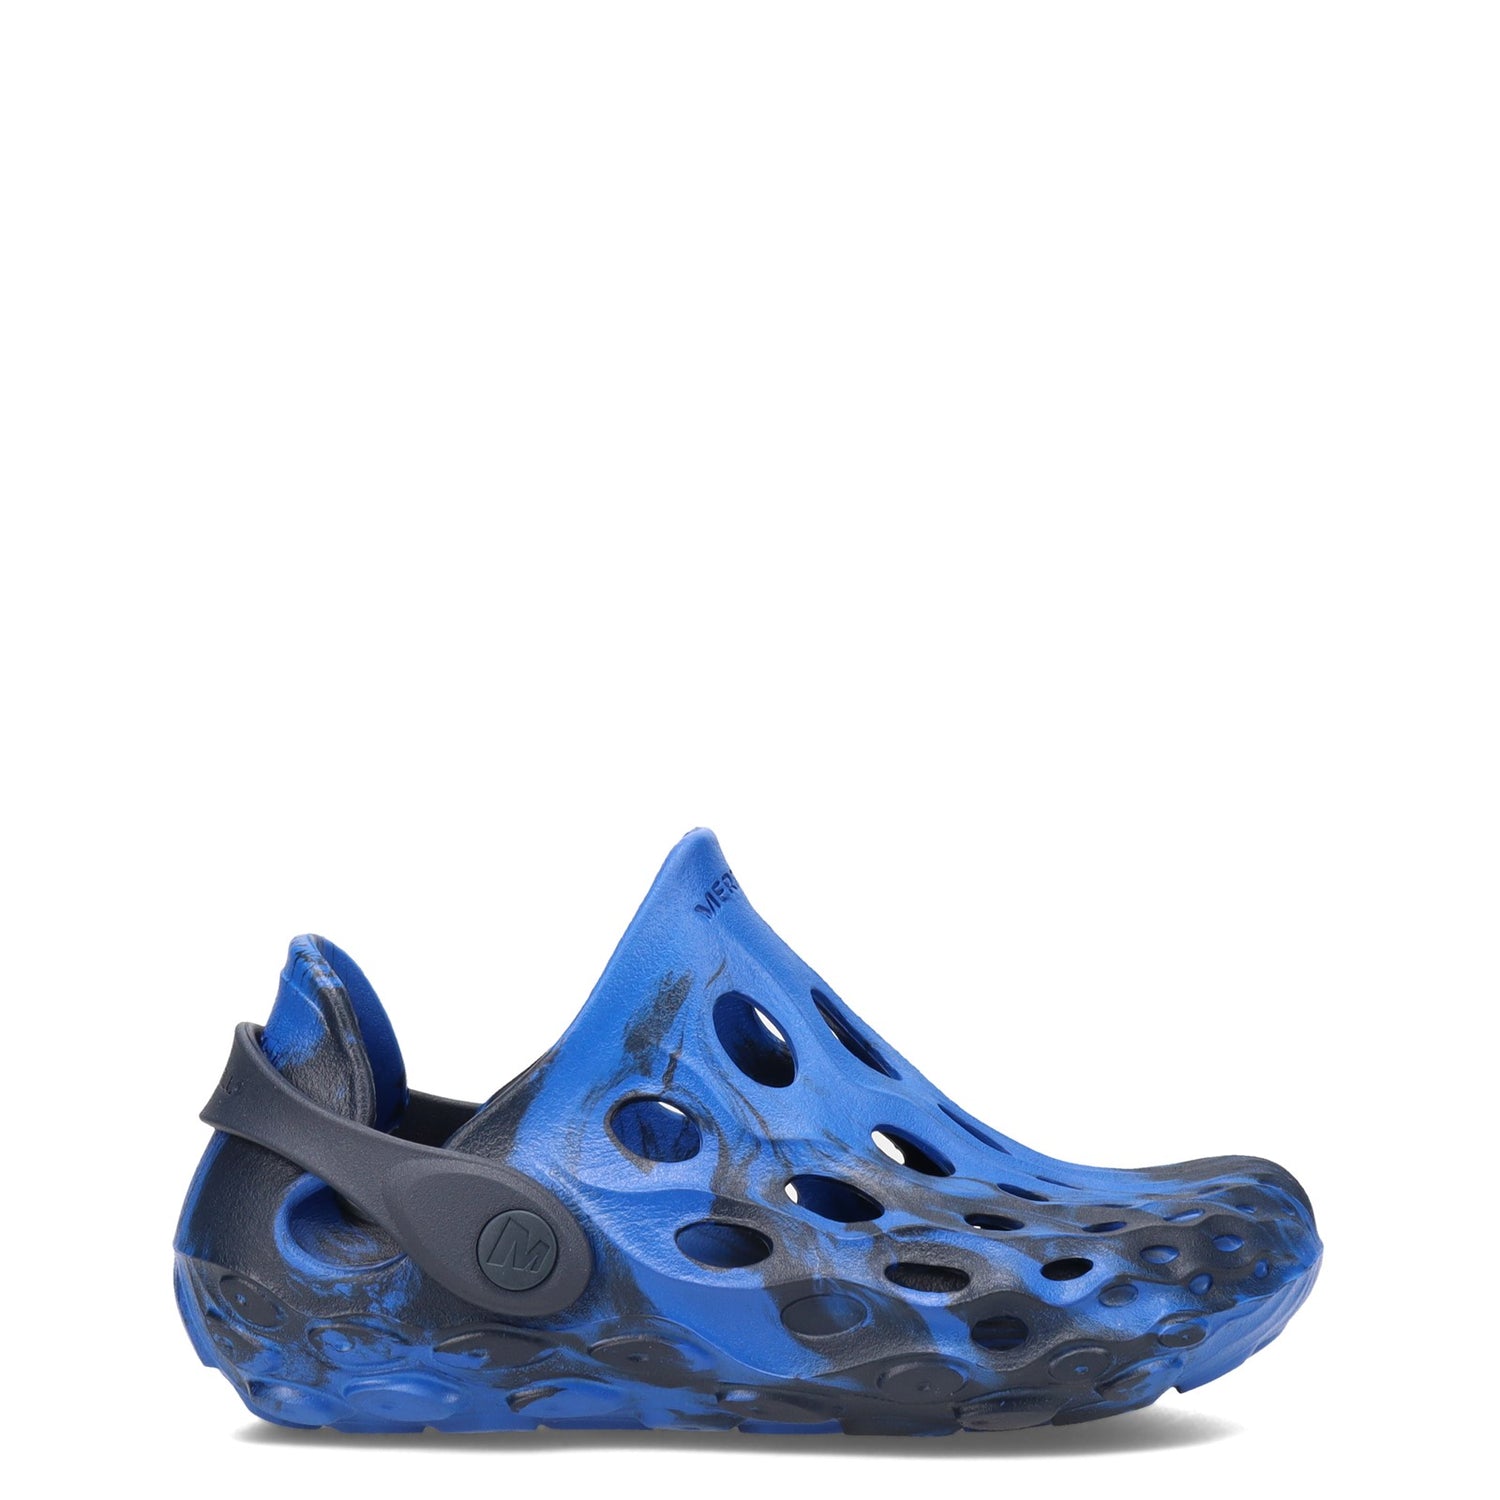 Peltz Shoes  Boy's Merrell Hydro Moc Water Shoe - Little Kid & Big Kid NAVY MK265456